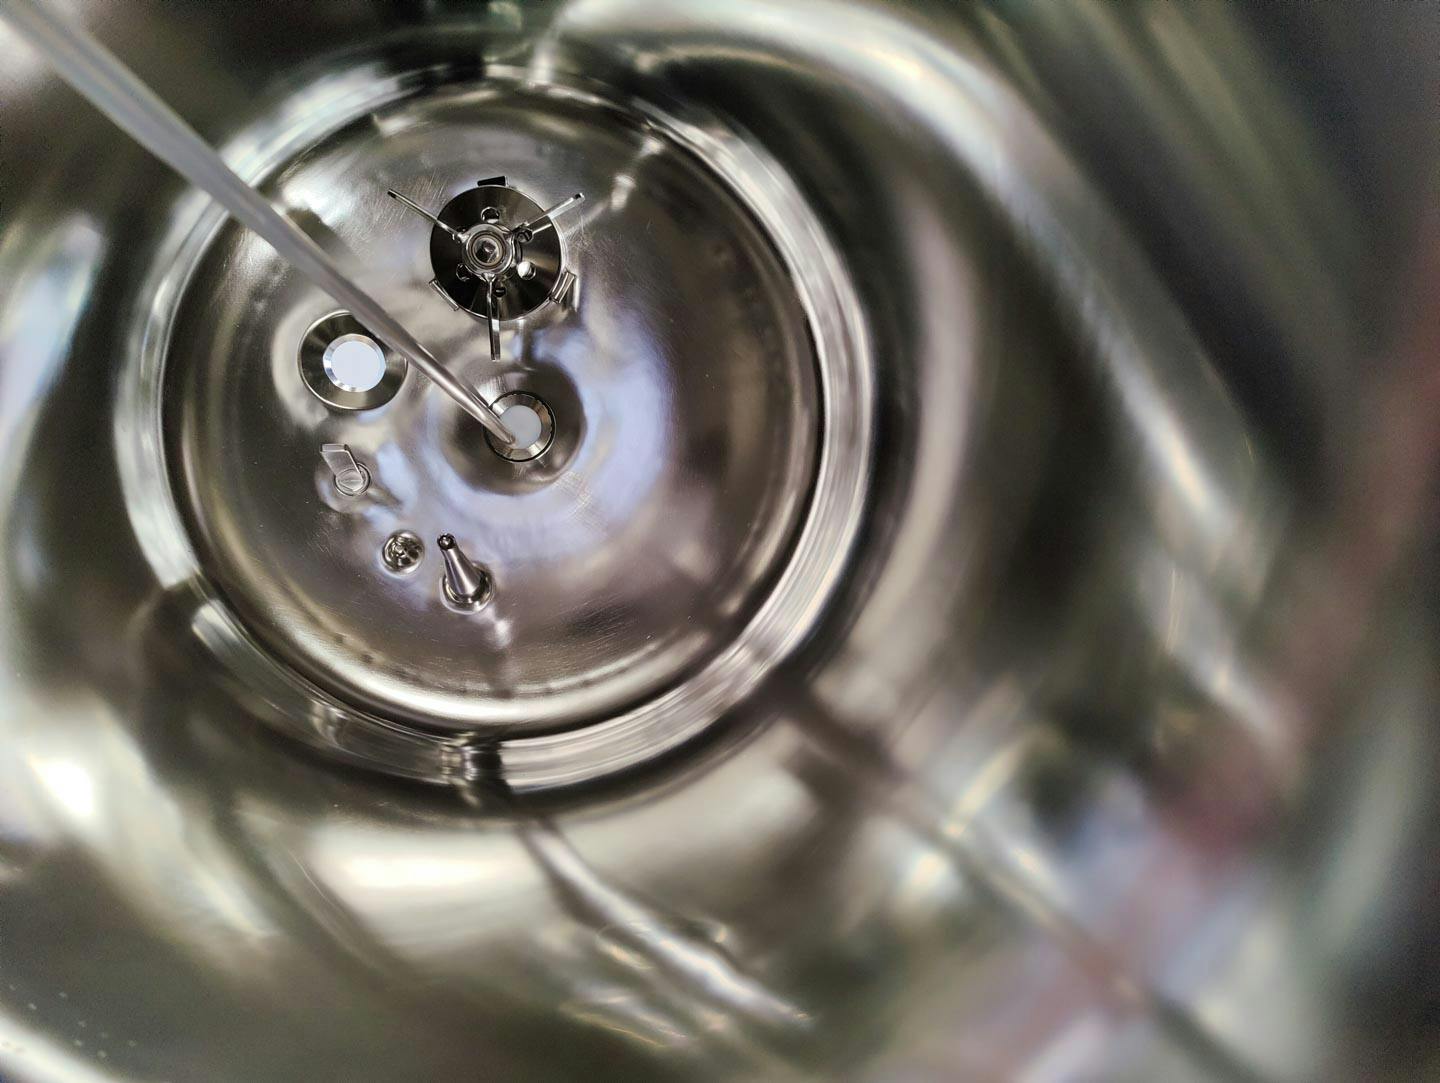 Edelstahl Maurer 130 Ltr. - Mirror-Polished Fraction Collector (Pharma Design) - Reactor de aço inoxidável - image 9